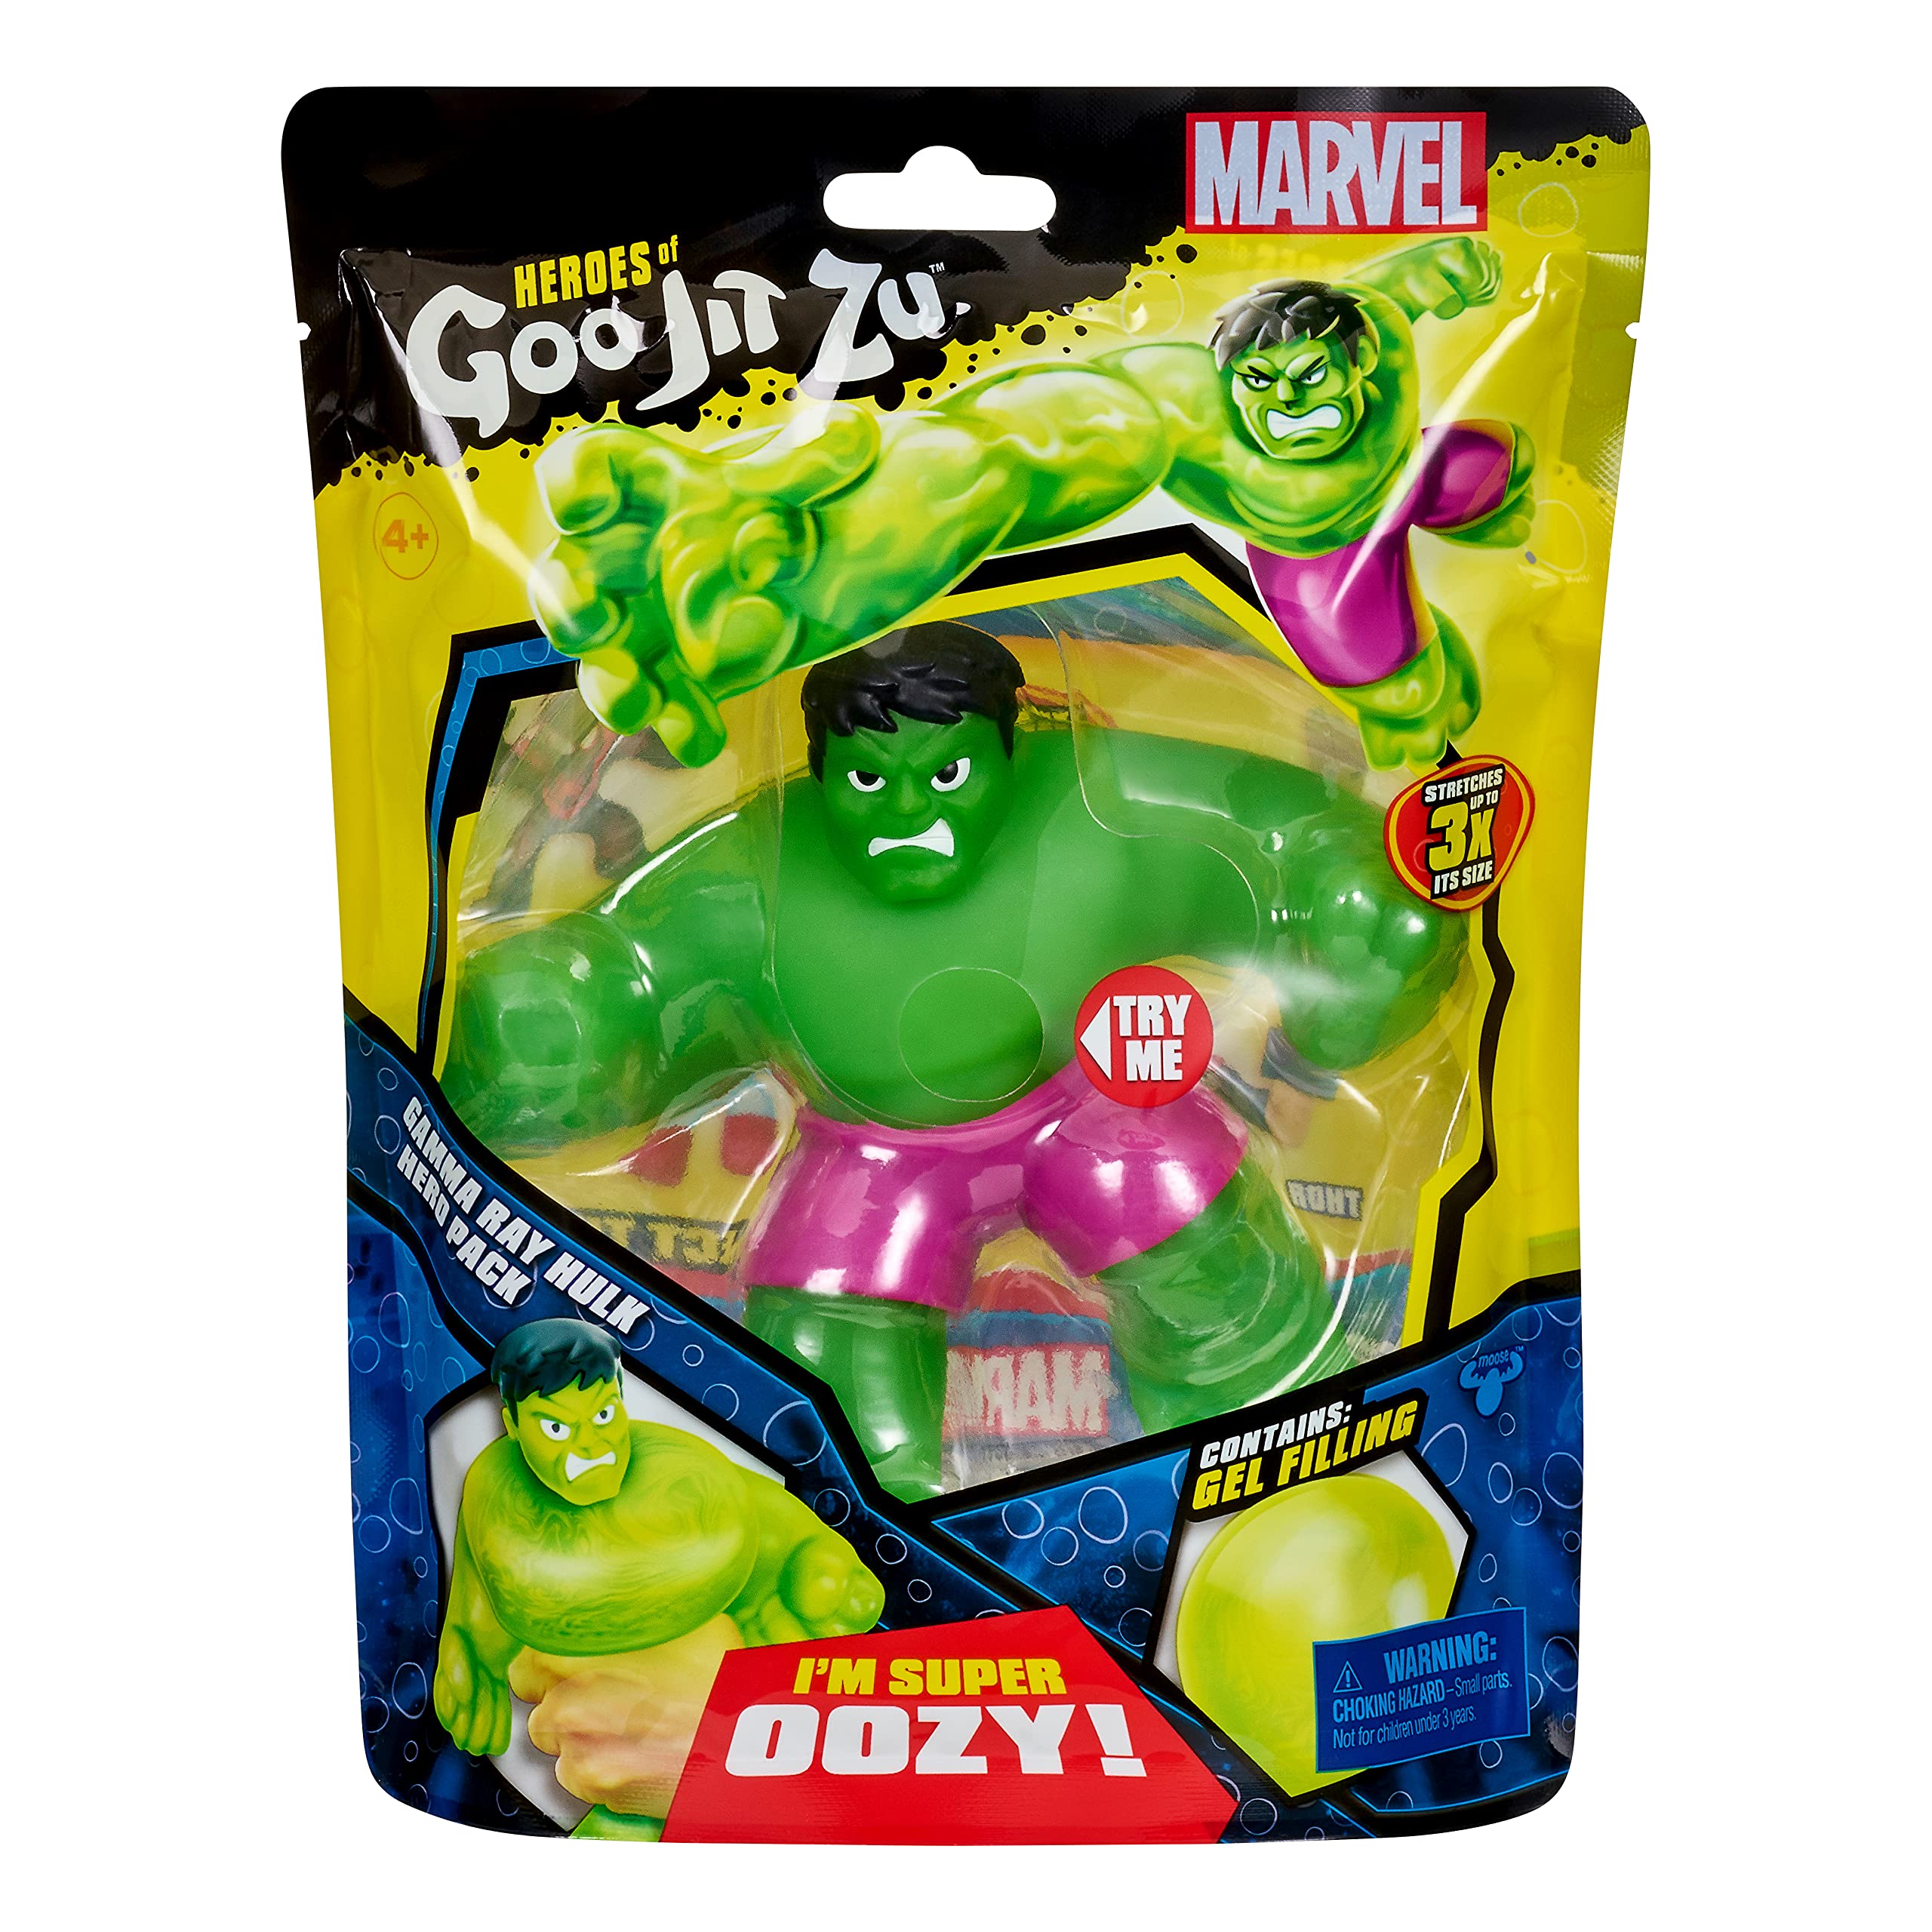 Heroes of Goo Jit Zu Licensed Marvel Hero Pack - Gamma Ray Hulk, Multicolor (41225)